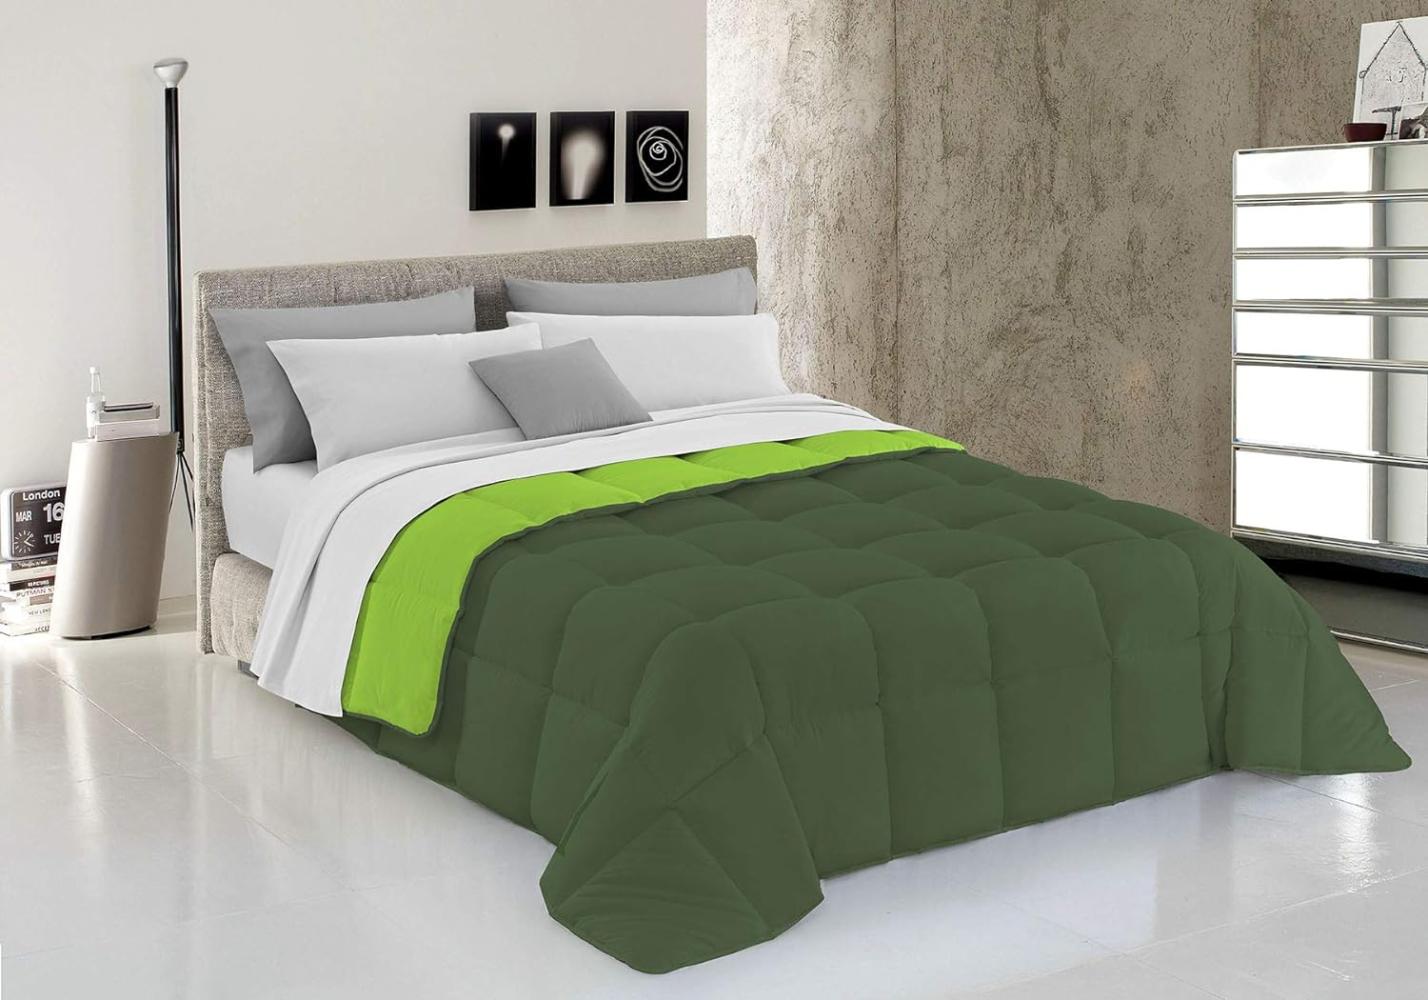 Italian Bed Linen Wintersteppdecke Elegant, Apfelgrün/Dunkel grün, Einzelne, 100% Mikrofaser, 170x260cm Bild 1